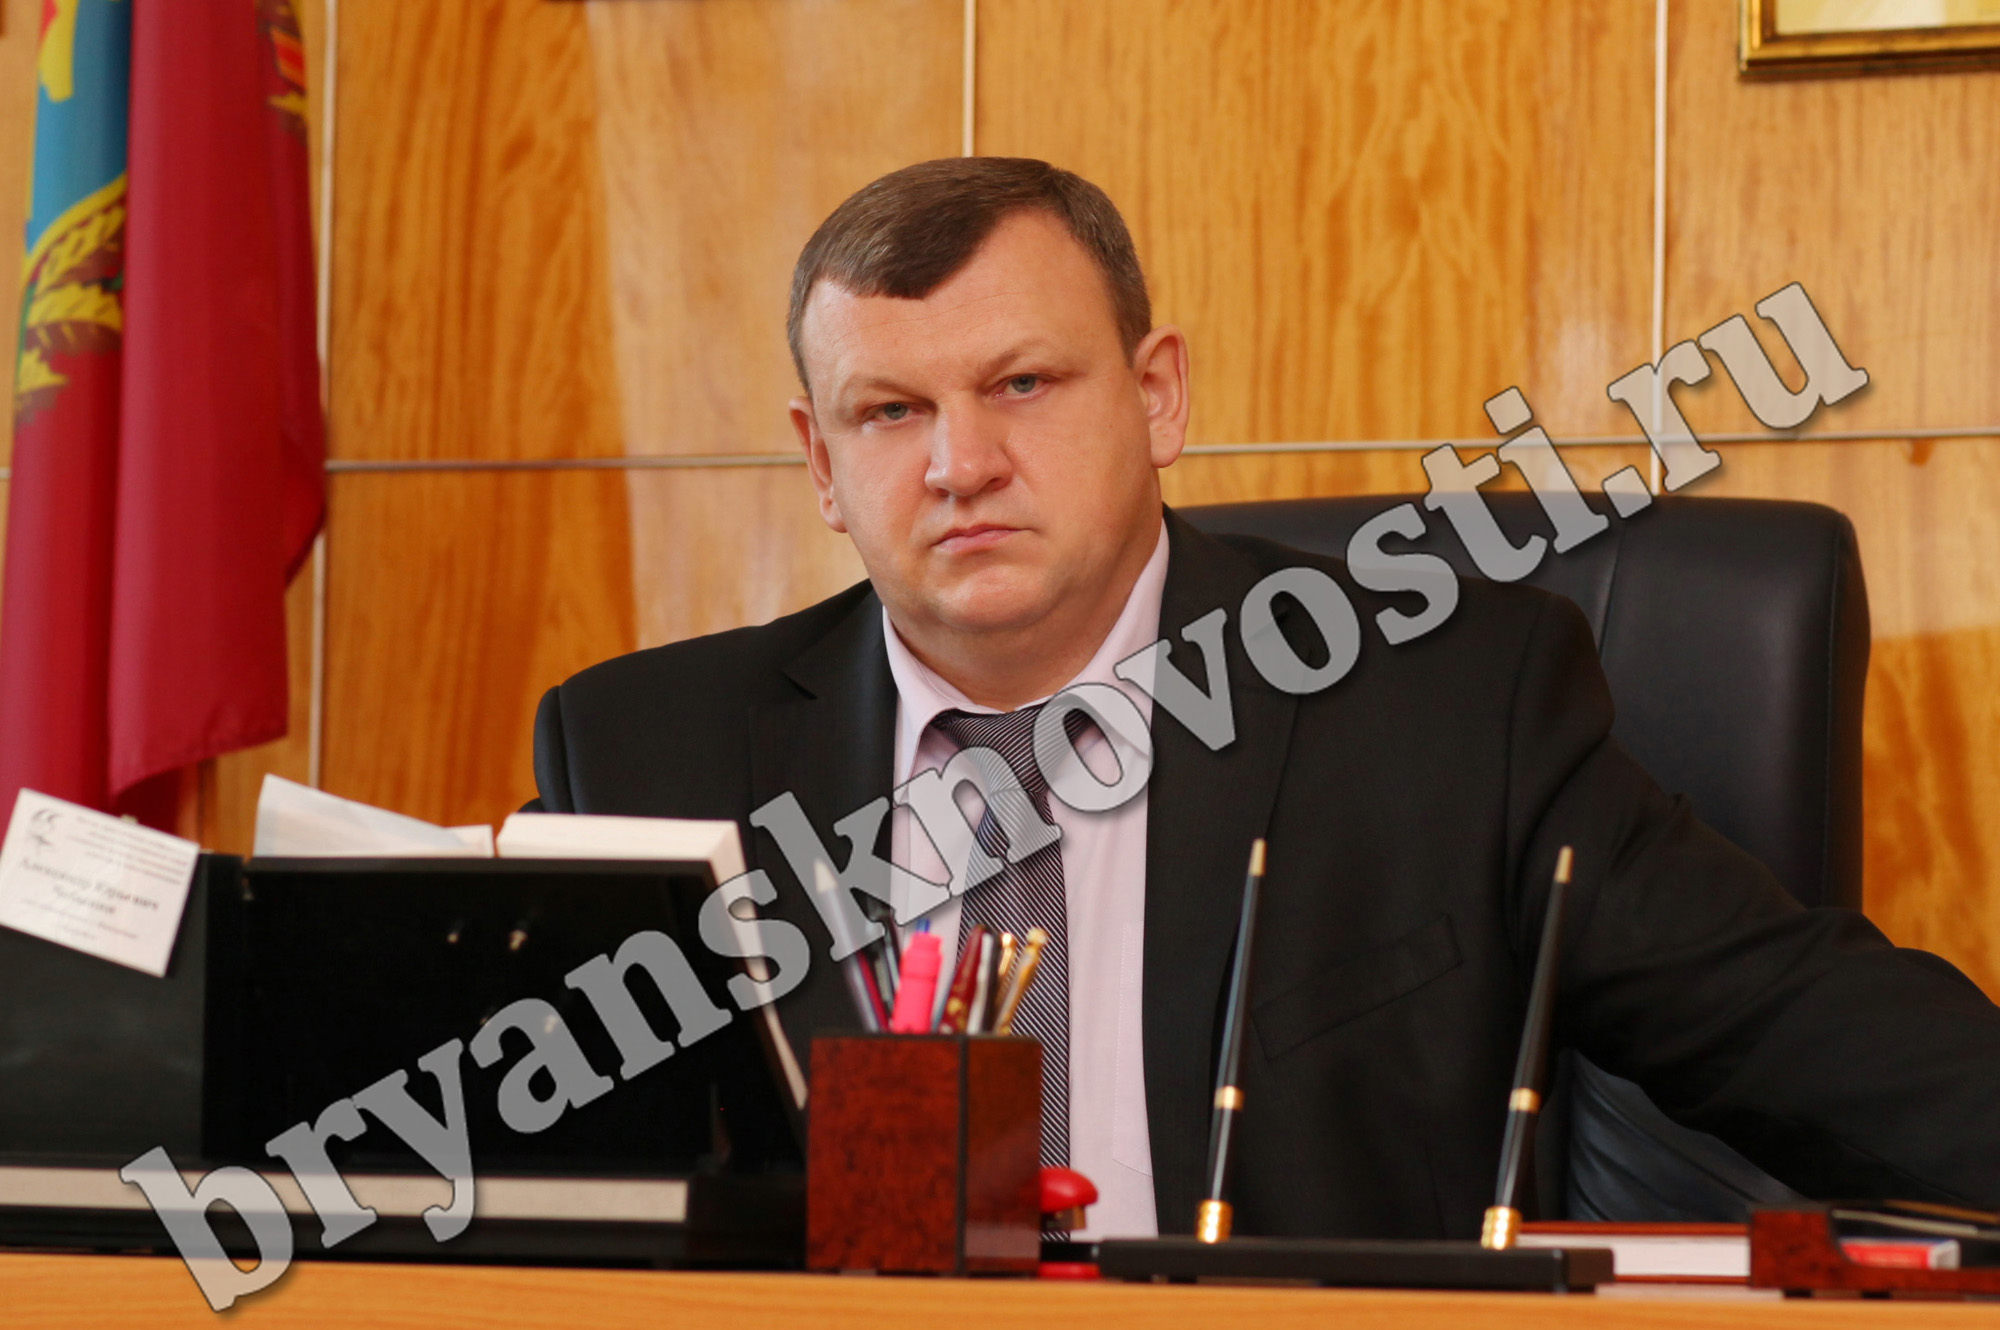 Глава администрации города Новозыбкова Александр Чебыкин подал заявление об отставке